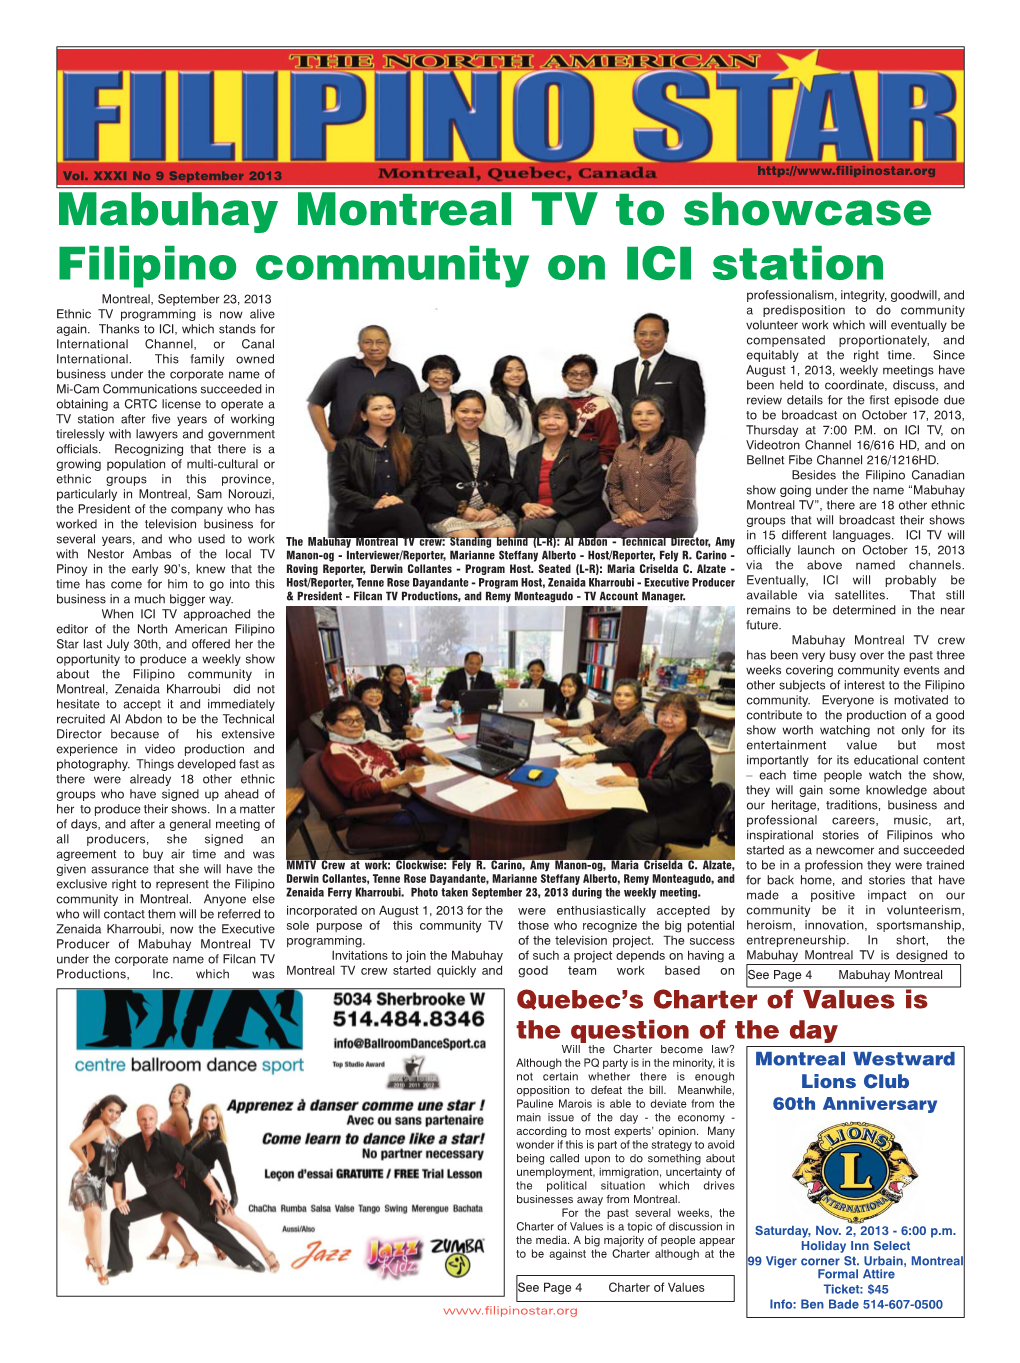 Mabuhay Montreal TV to Showcase Filipino Community on ICI Station